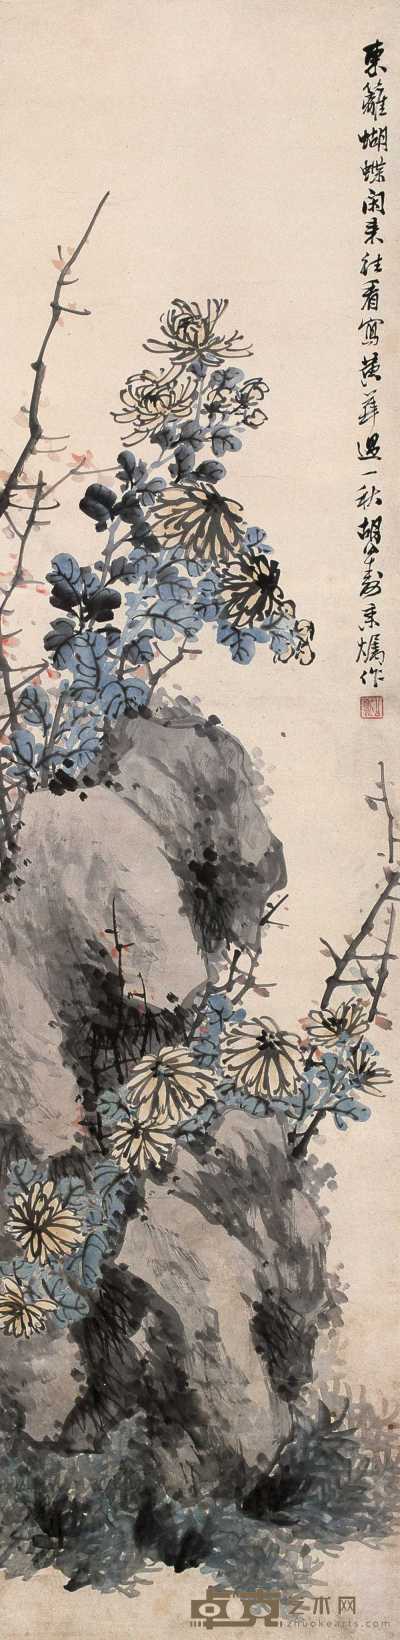 胡公寿 菊石图 立轴 136×33cm